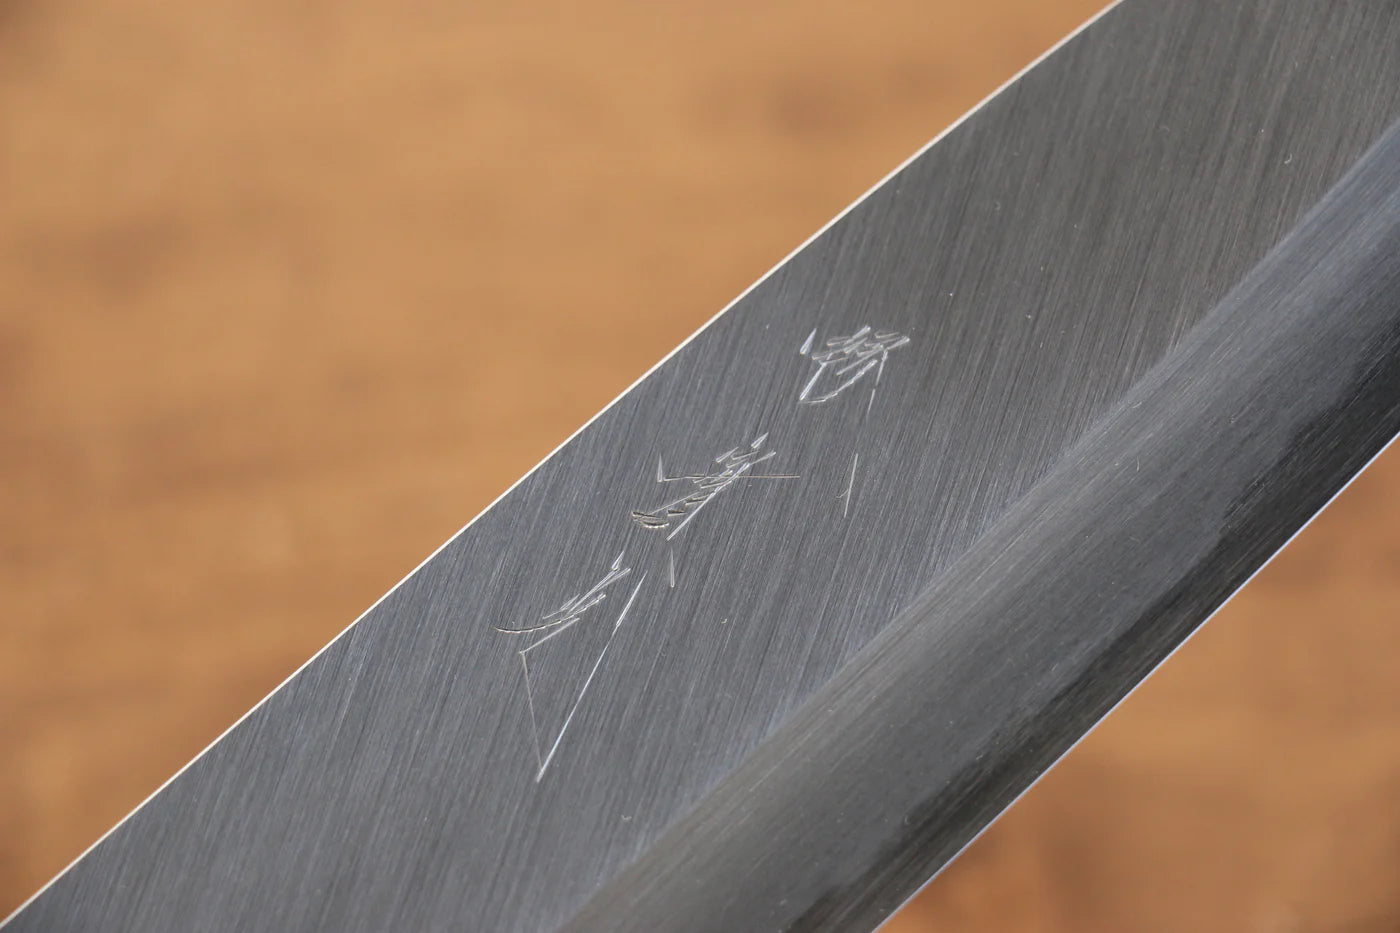 Jikko Marke Nr. 2 Santoku-Mehrzweckmesser aus weißem Stahl, japanisches Messer, 180 mm, Magnolienholz, Messergriff